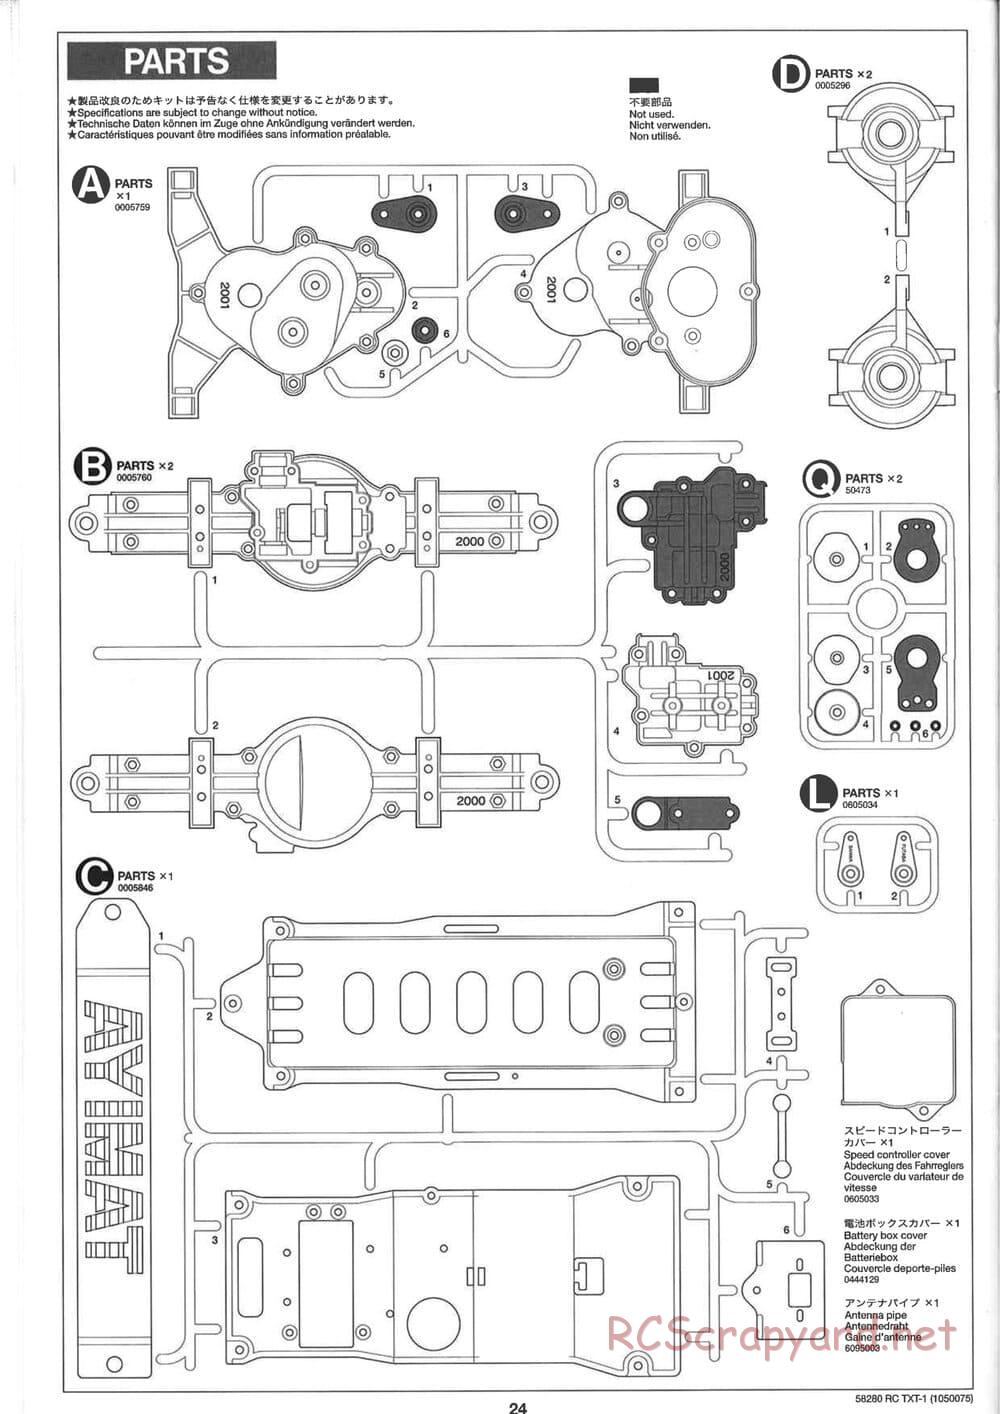 Tamiya - TXT-1 (Tamiya Xtreme Truck) Chassis - Manual - Page 24